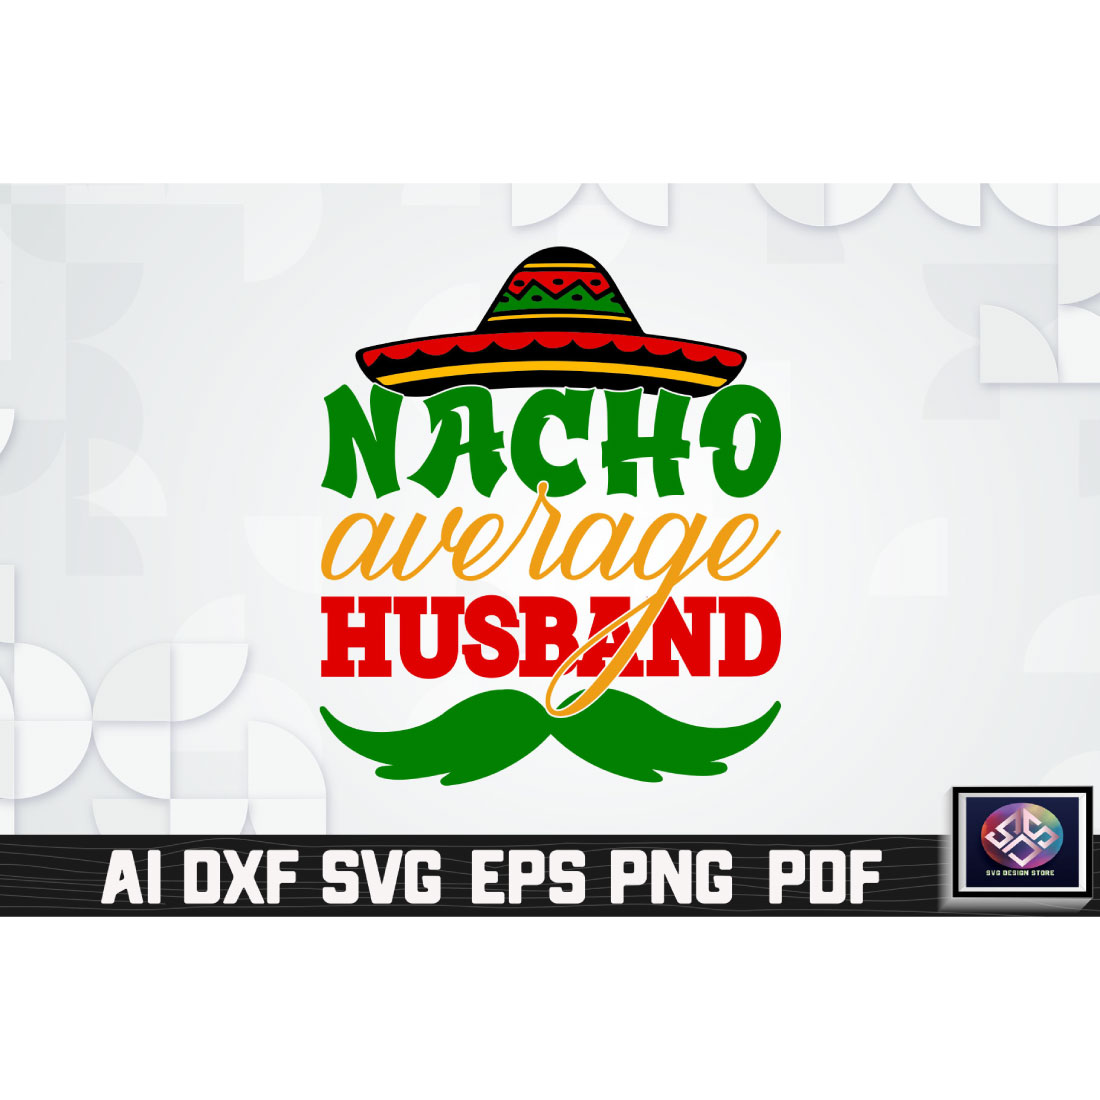 Nacho Average Husband cover image.